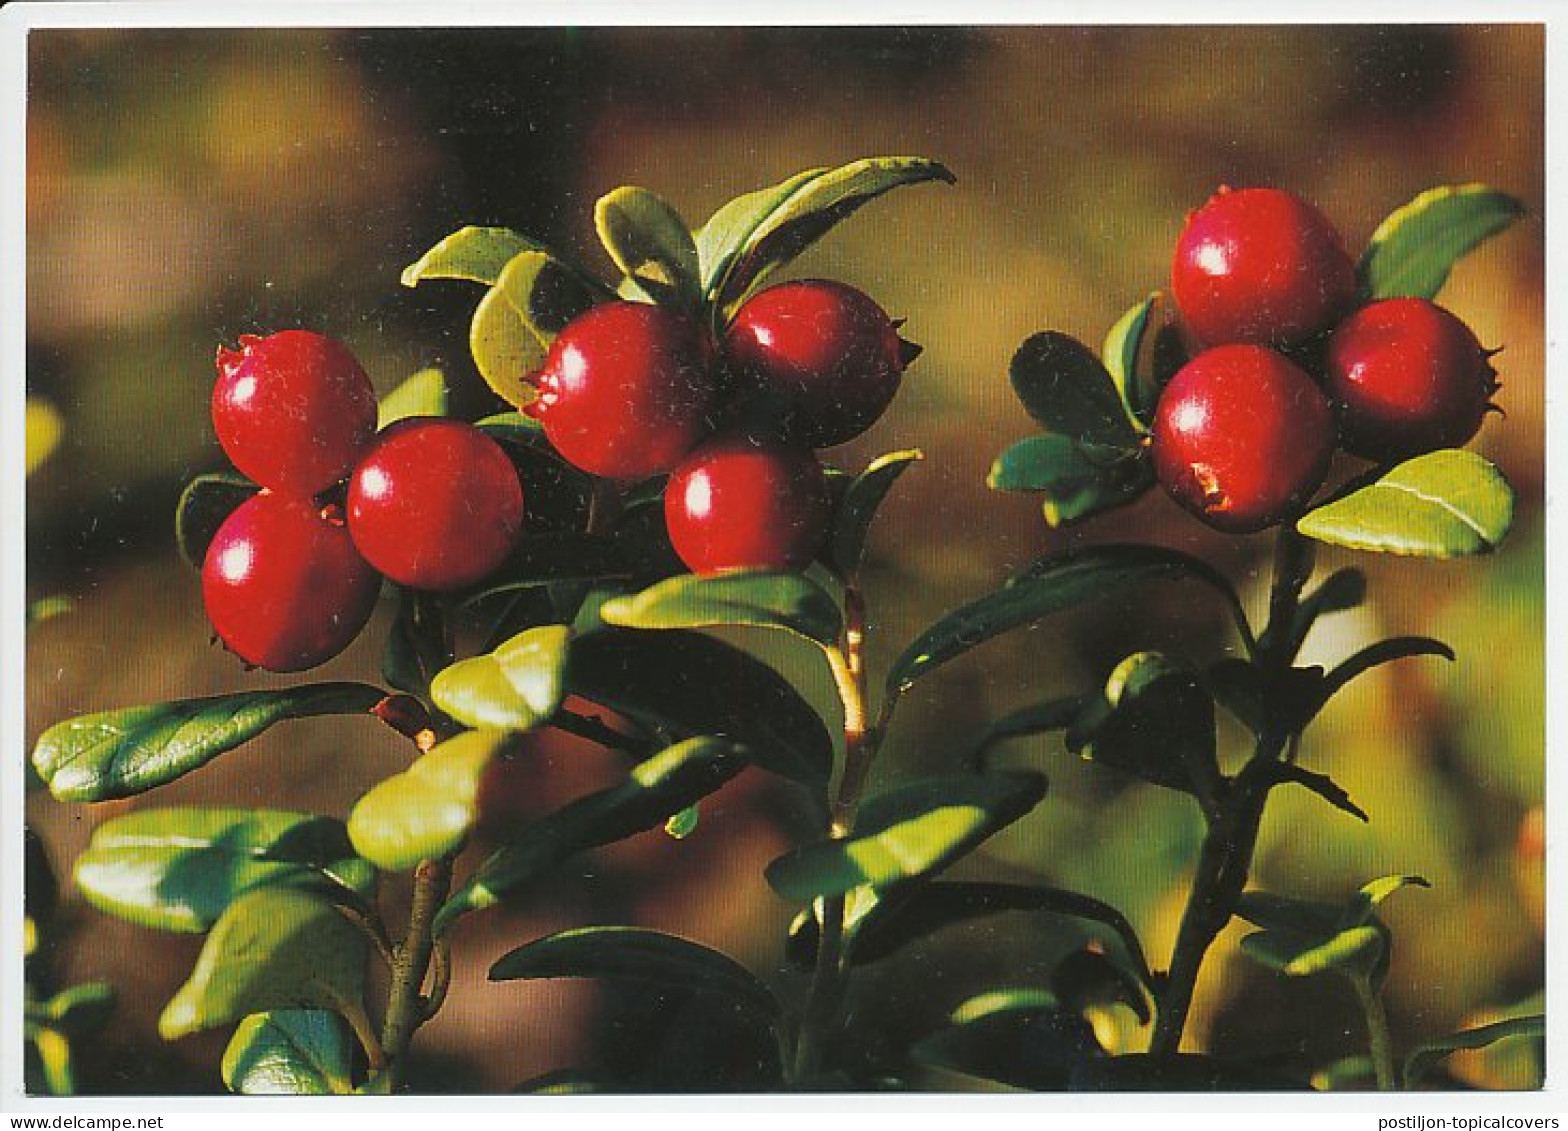 Postal Stationery Sweden Cranberry - Fruit